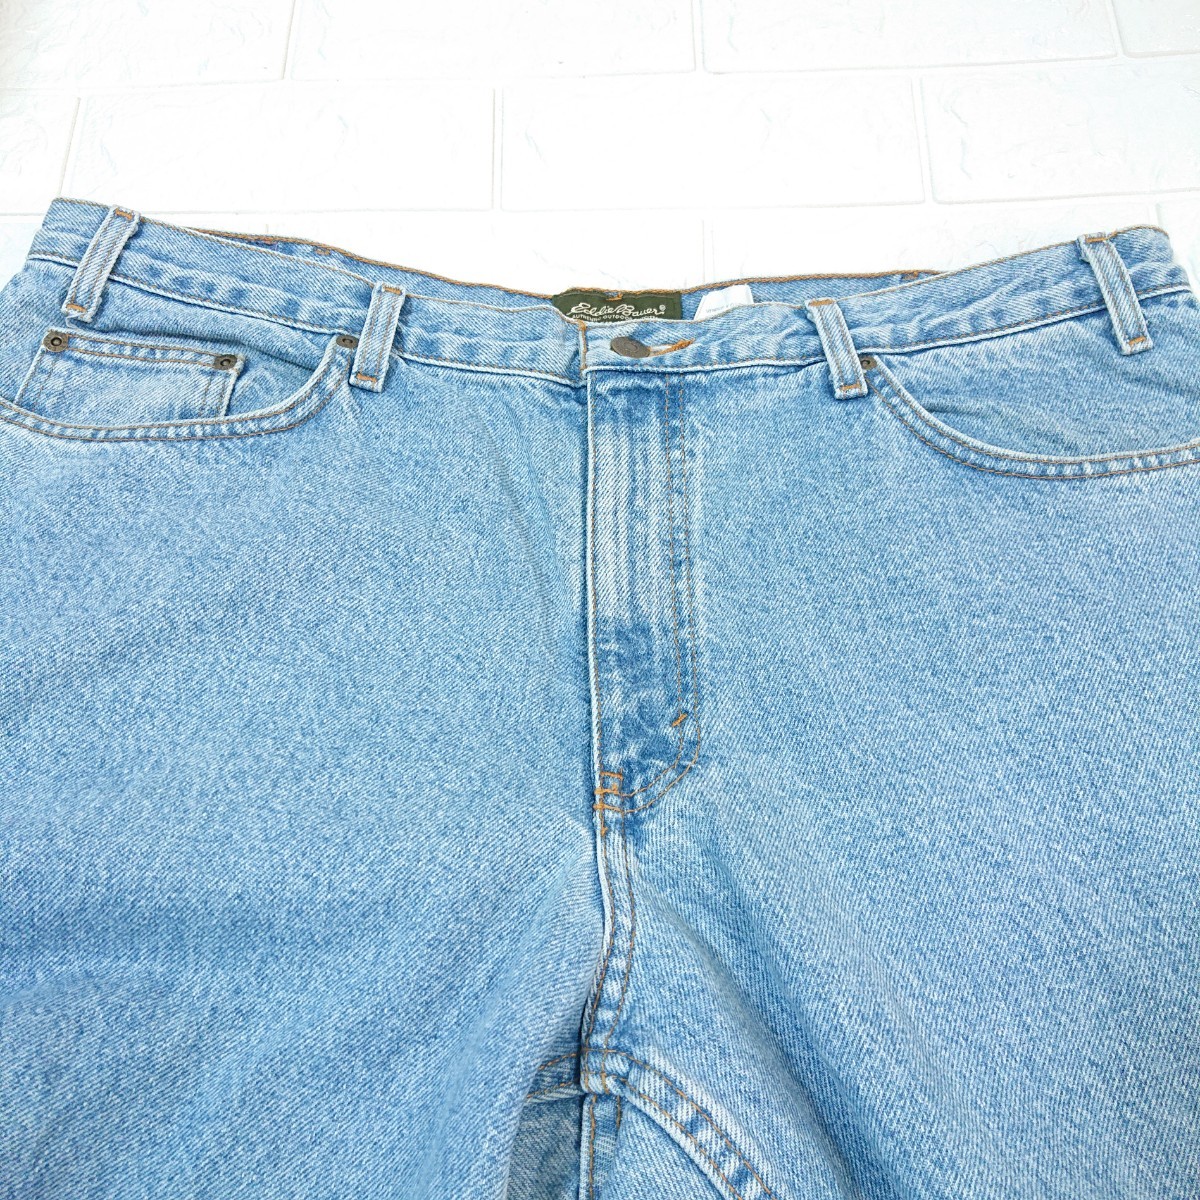 【00s】Old Eddie Bauer オールド エディーバウアー RELATED FIT ルーズシルエット デニム バギー ジーンズ W40 L32 ビッグサイズ jeans の画像3